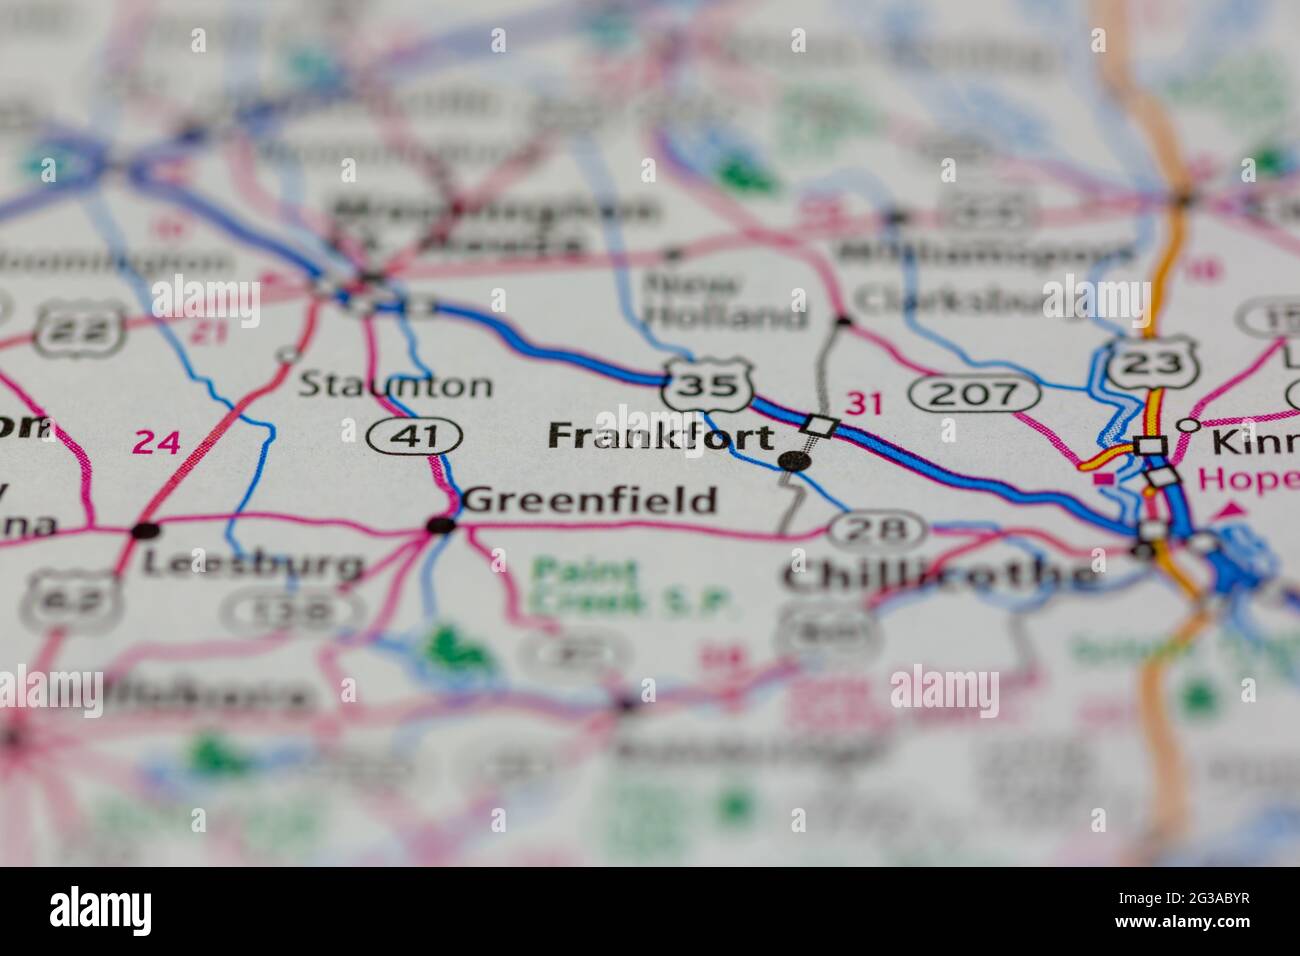 Frankfort Ohio USA mostrado en un mapa geográfico o mapa de carreteras Foto de stock